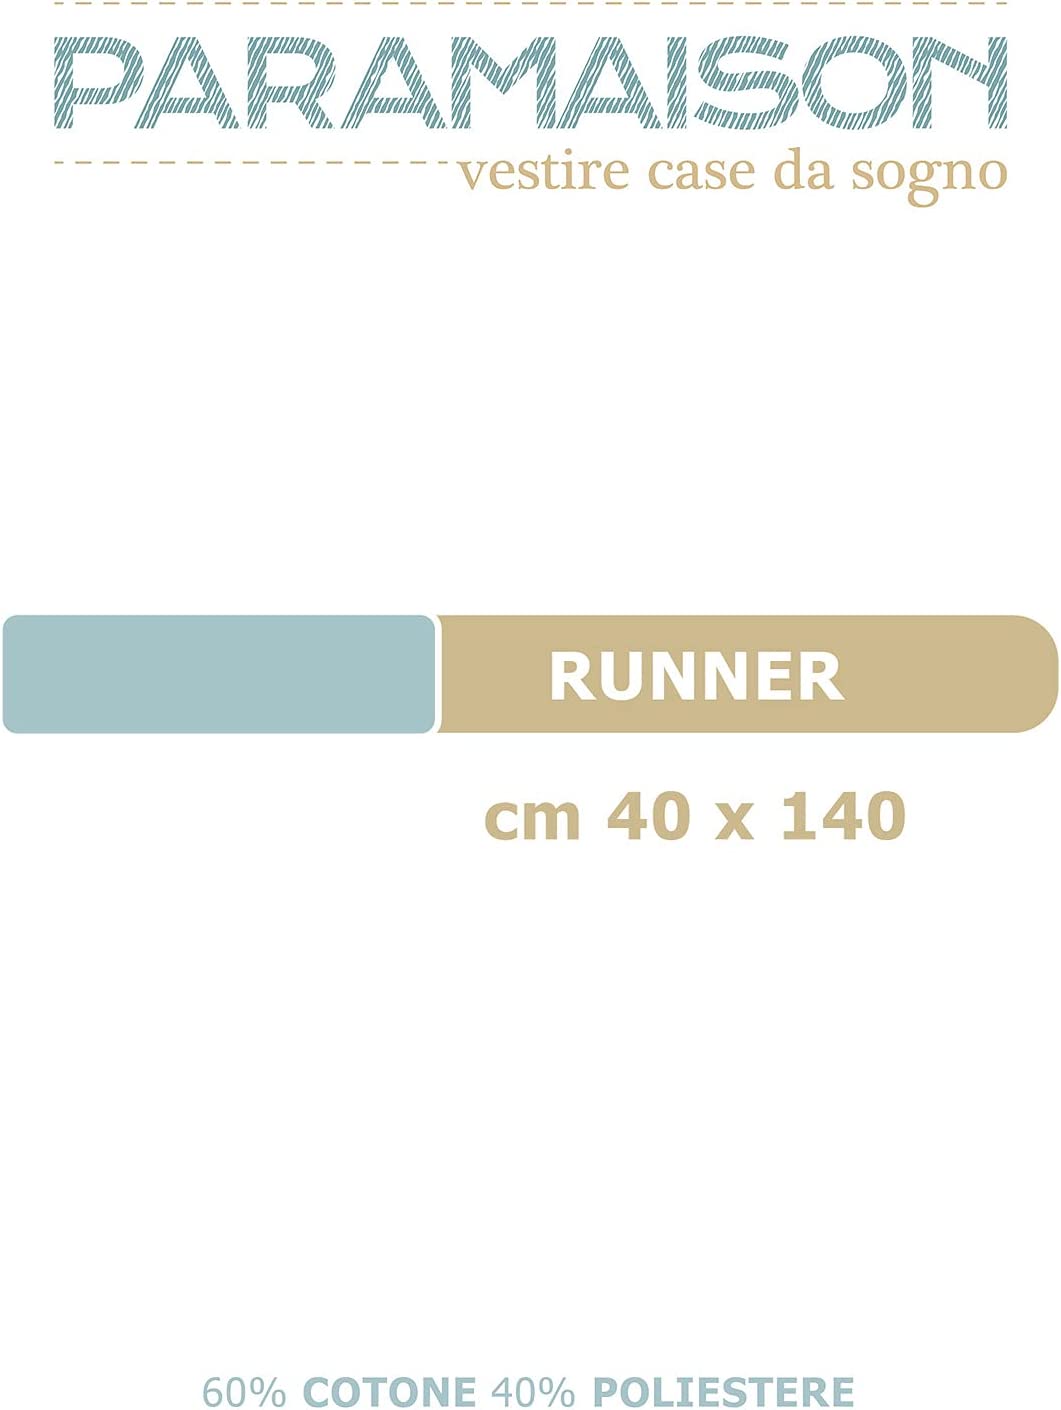 Runner rettangolare 140x40 per Soggiorno e Cucina vari colori linea Melange